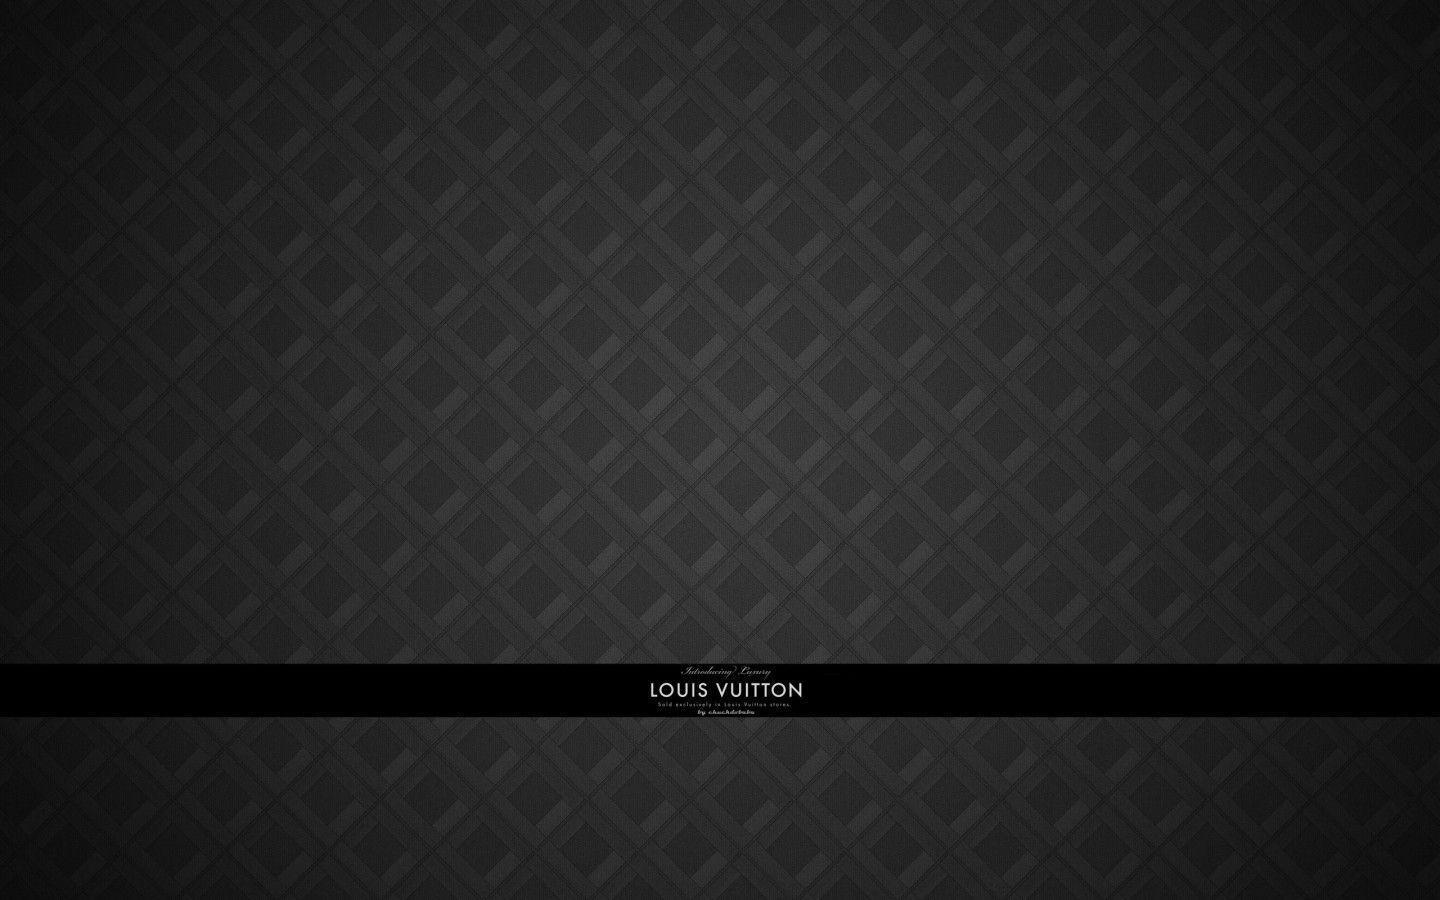 Louis Vuitton BW Mac Wallpaper Download. Free Mac Wallpaper Download